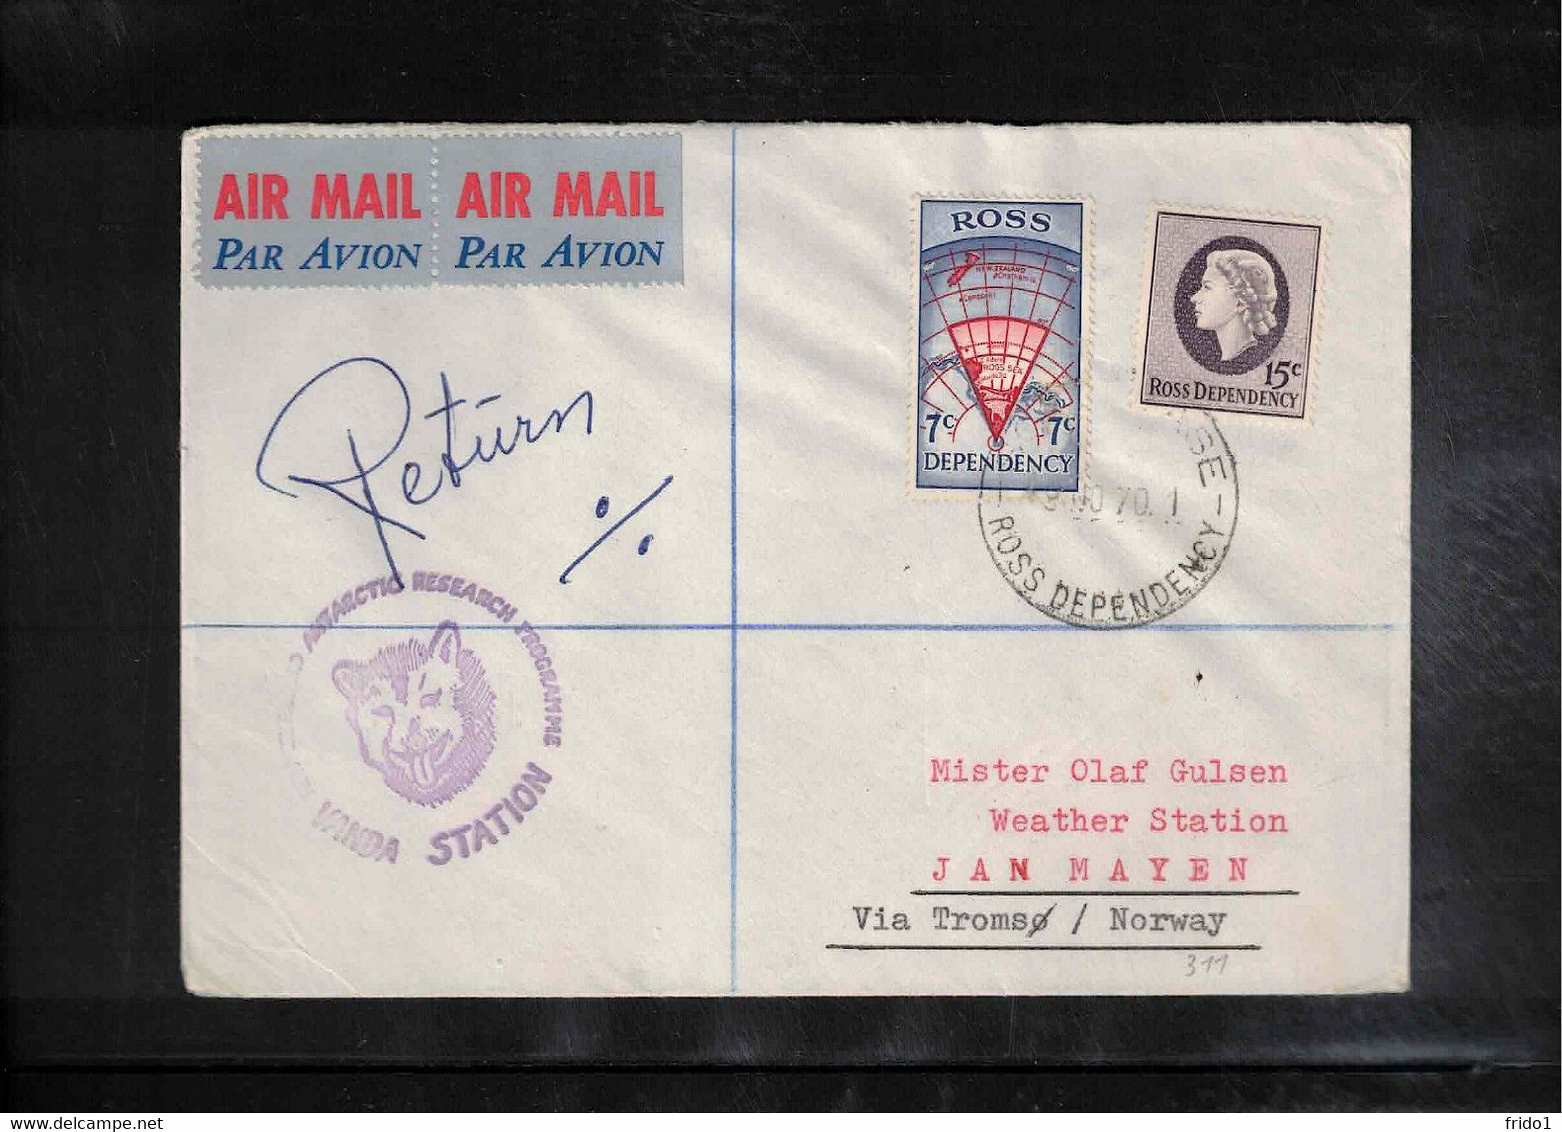 Ross Dependency 1970 Scott Base - VANDA STATION Airmail Interesting Letter - Covers & Documents